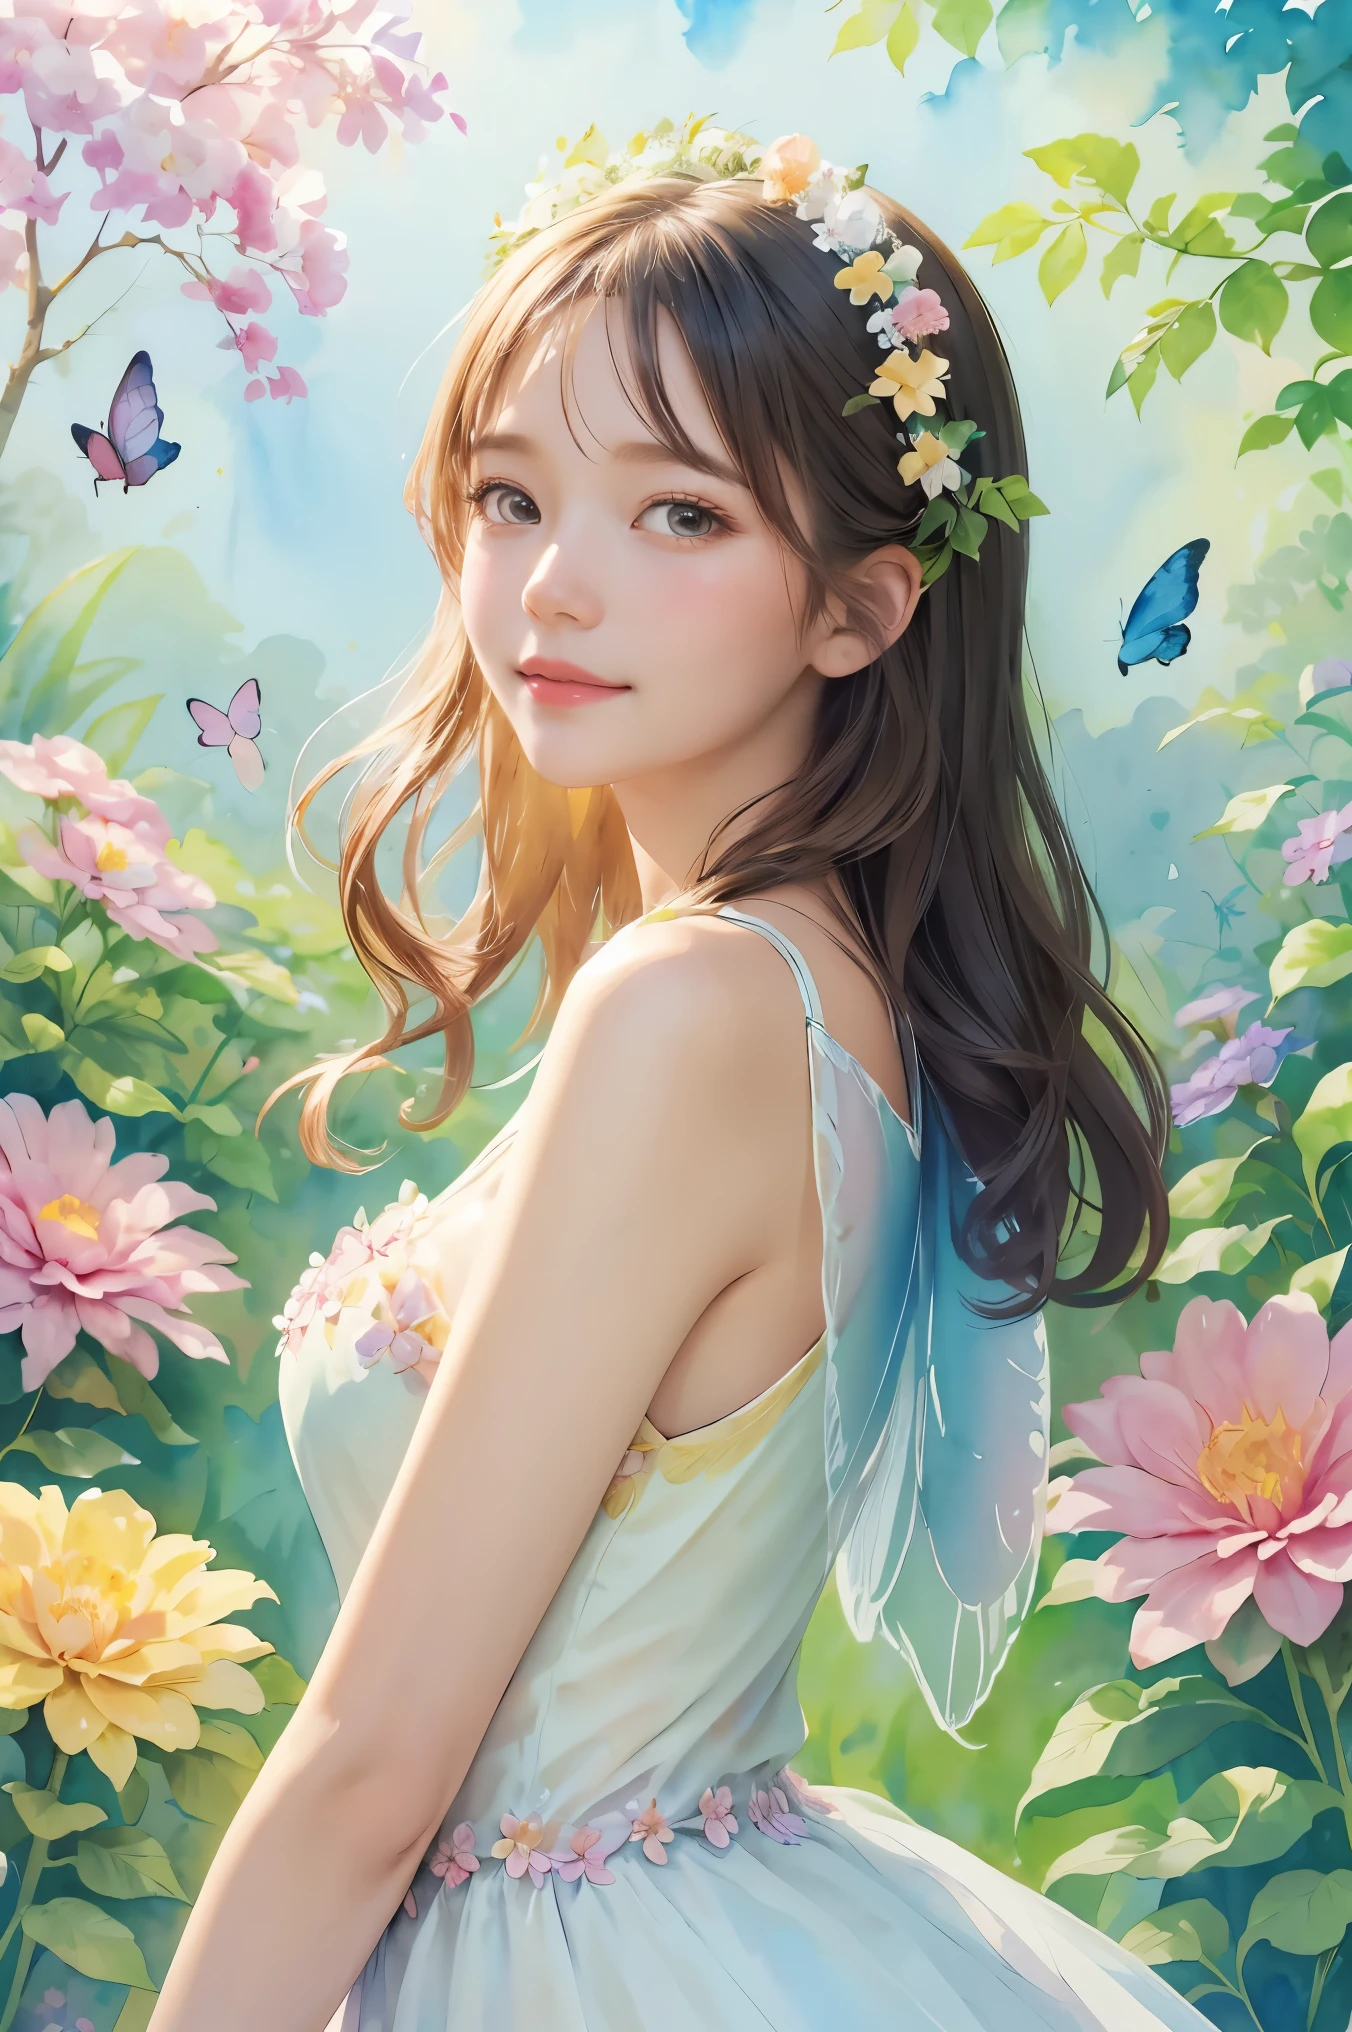 요정 의상을 입은 아름다운 소녀, 꽃과 나비에 둘러싸여. 콘텐츠: 수채화 그림. 스타일: 기발하고 섬세하다, 마치 동화책 일러스트처럼.